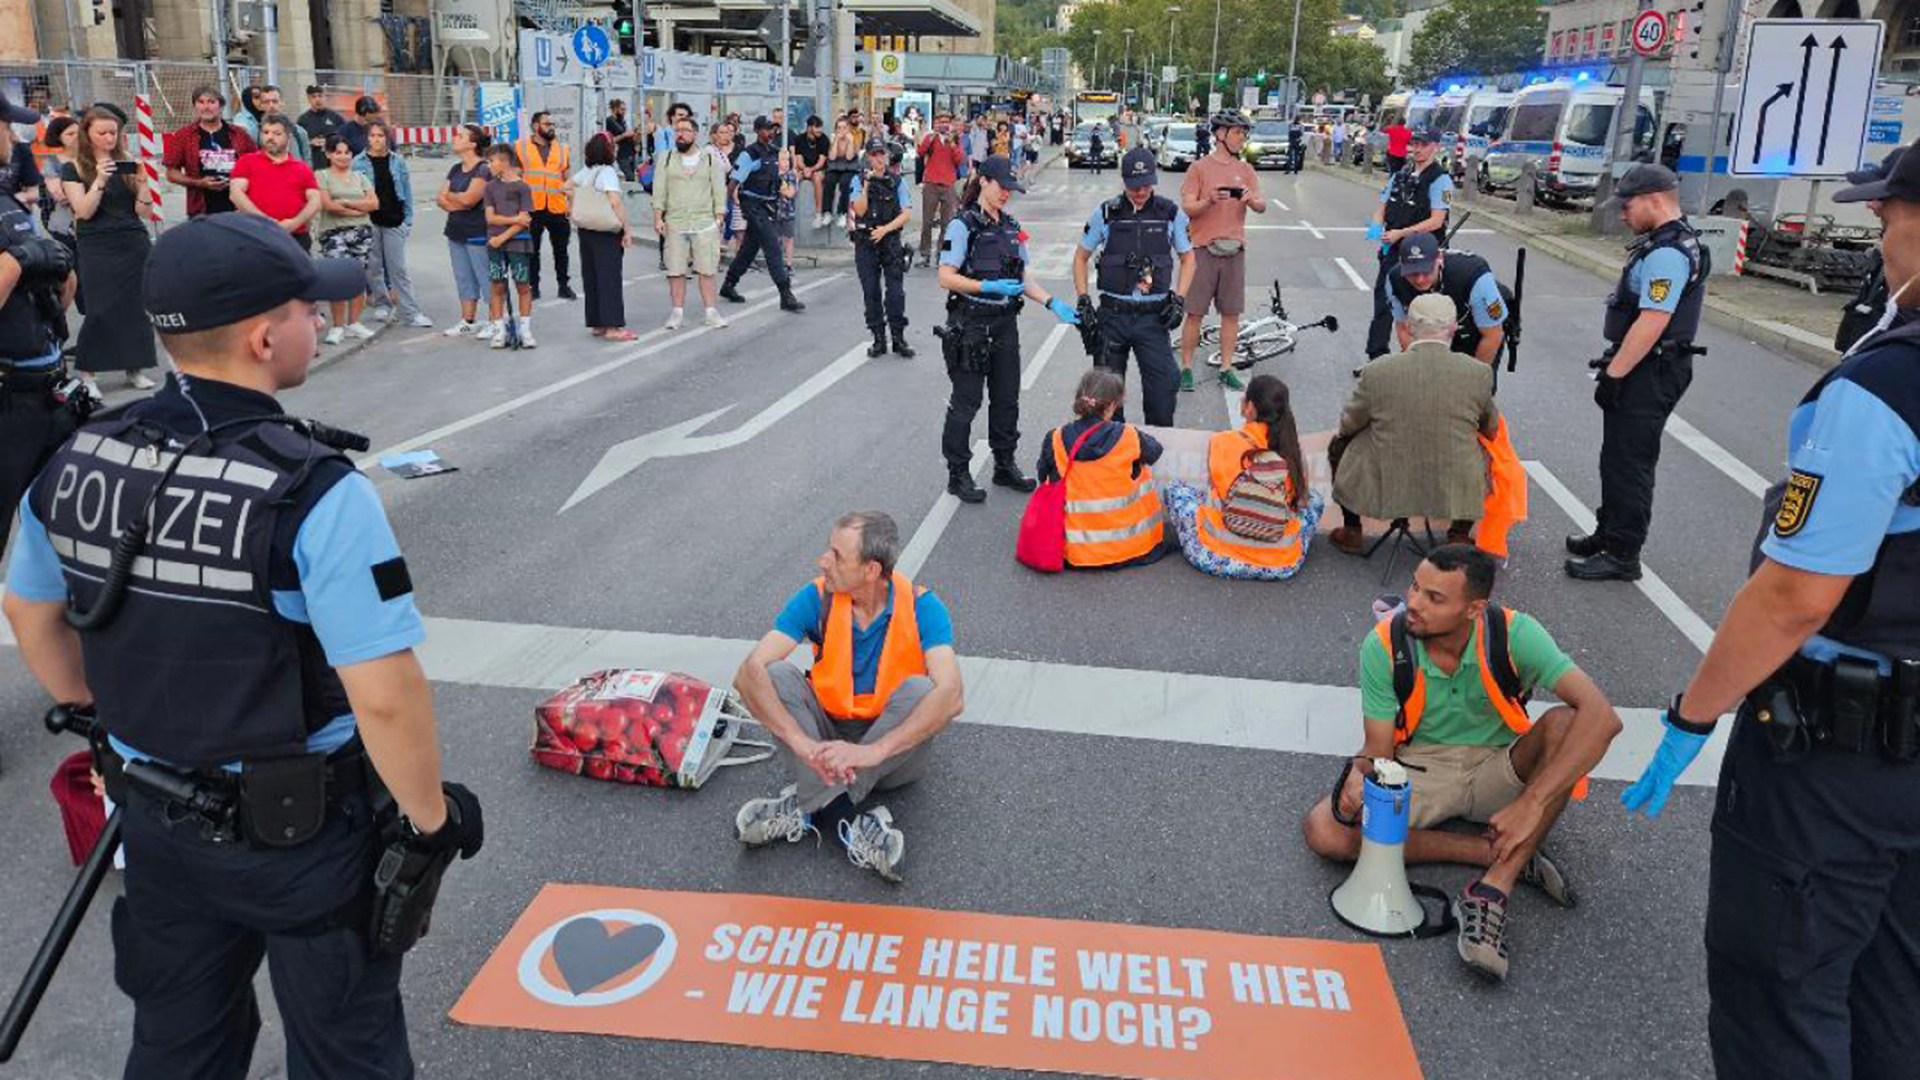 Aktivisten und Aktivistinnen der Klimaschutzgruppe "Letzte Generation" blockieren eine Straße in Berlin.